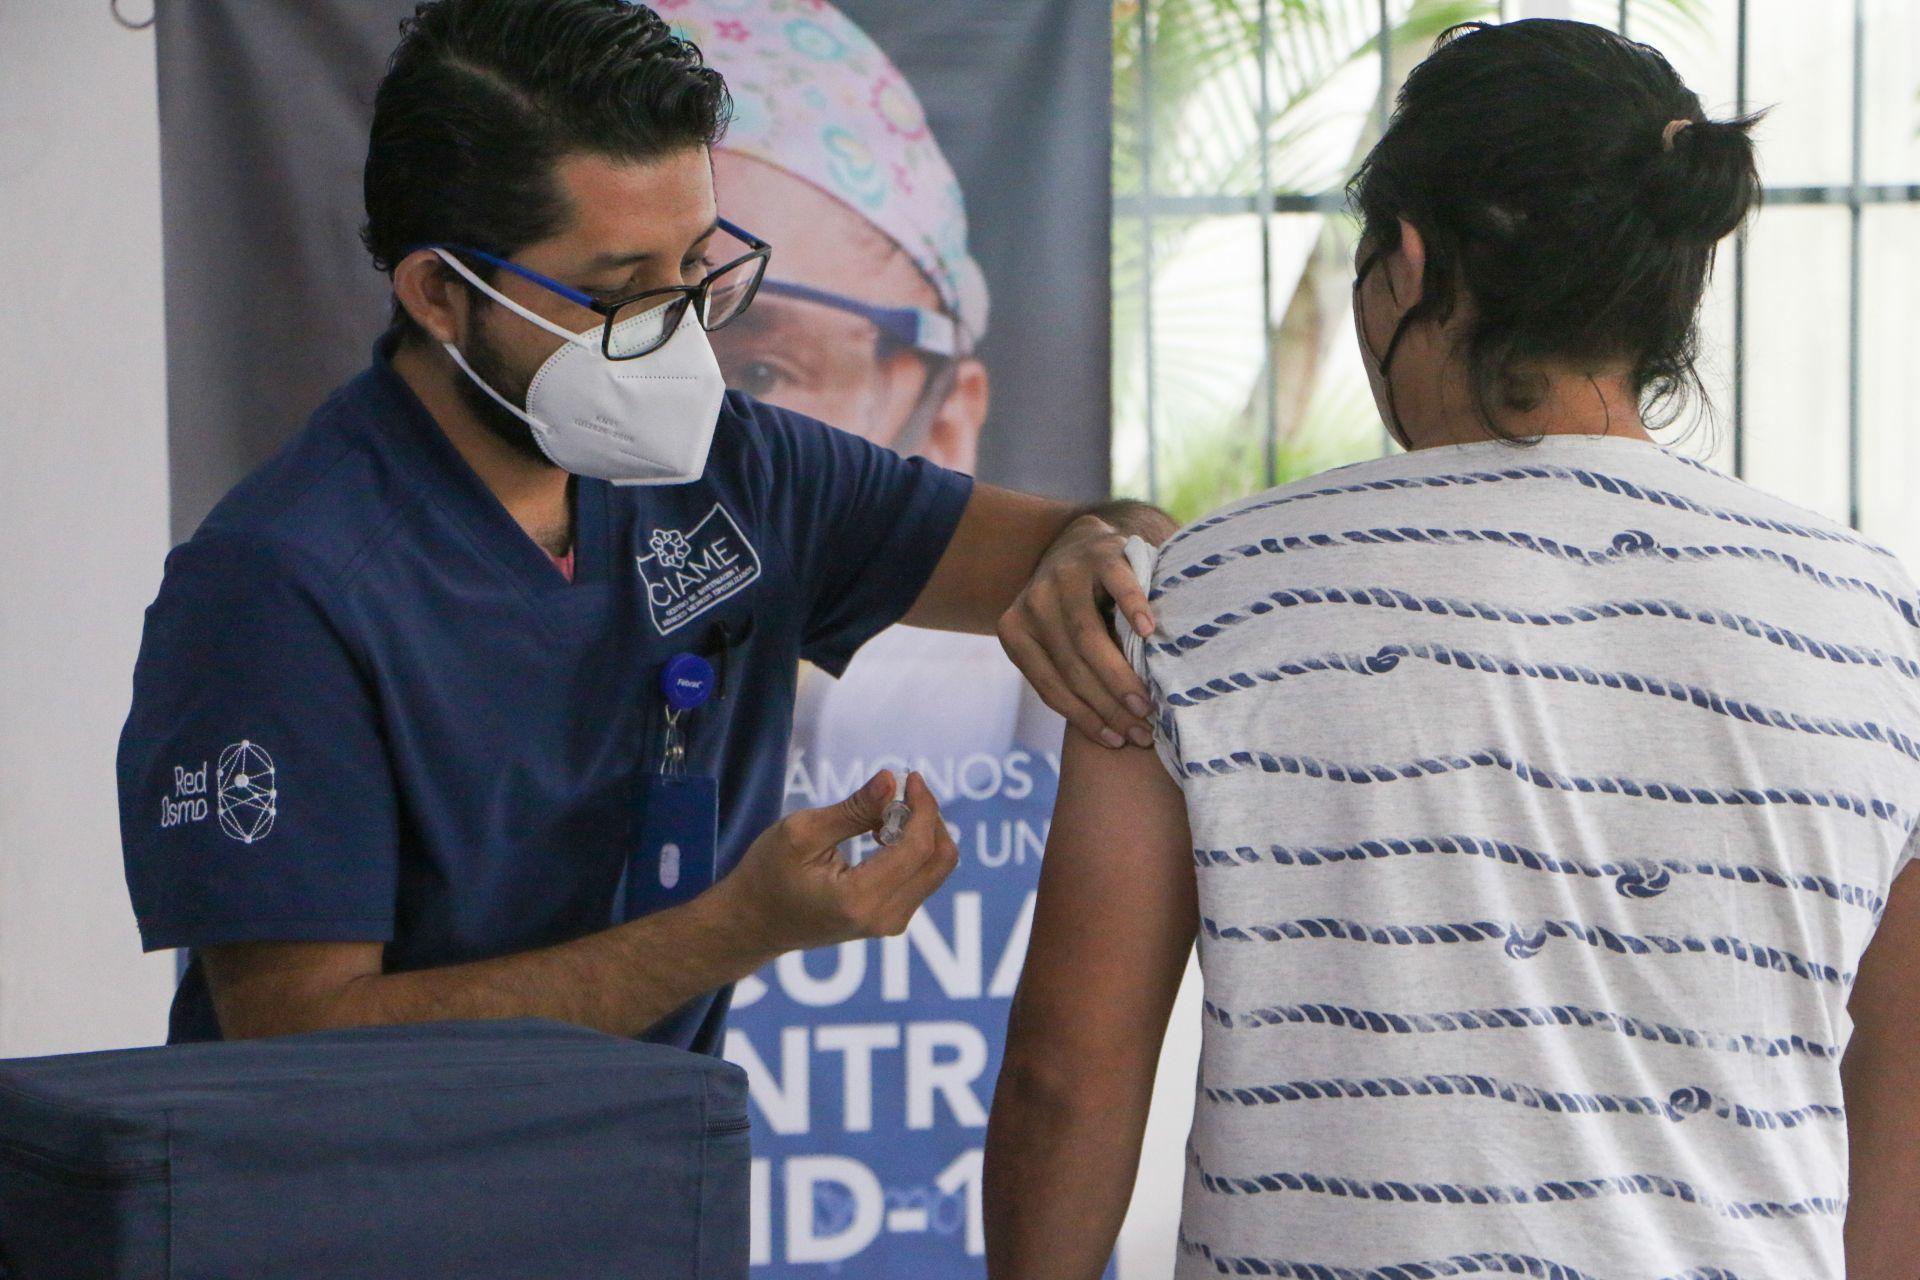 Marcelo Ebrard comparte invitación para ser voluntario en los ensayos de la vacuna contra COVID-19